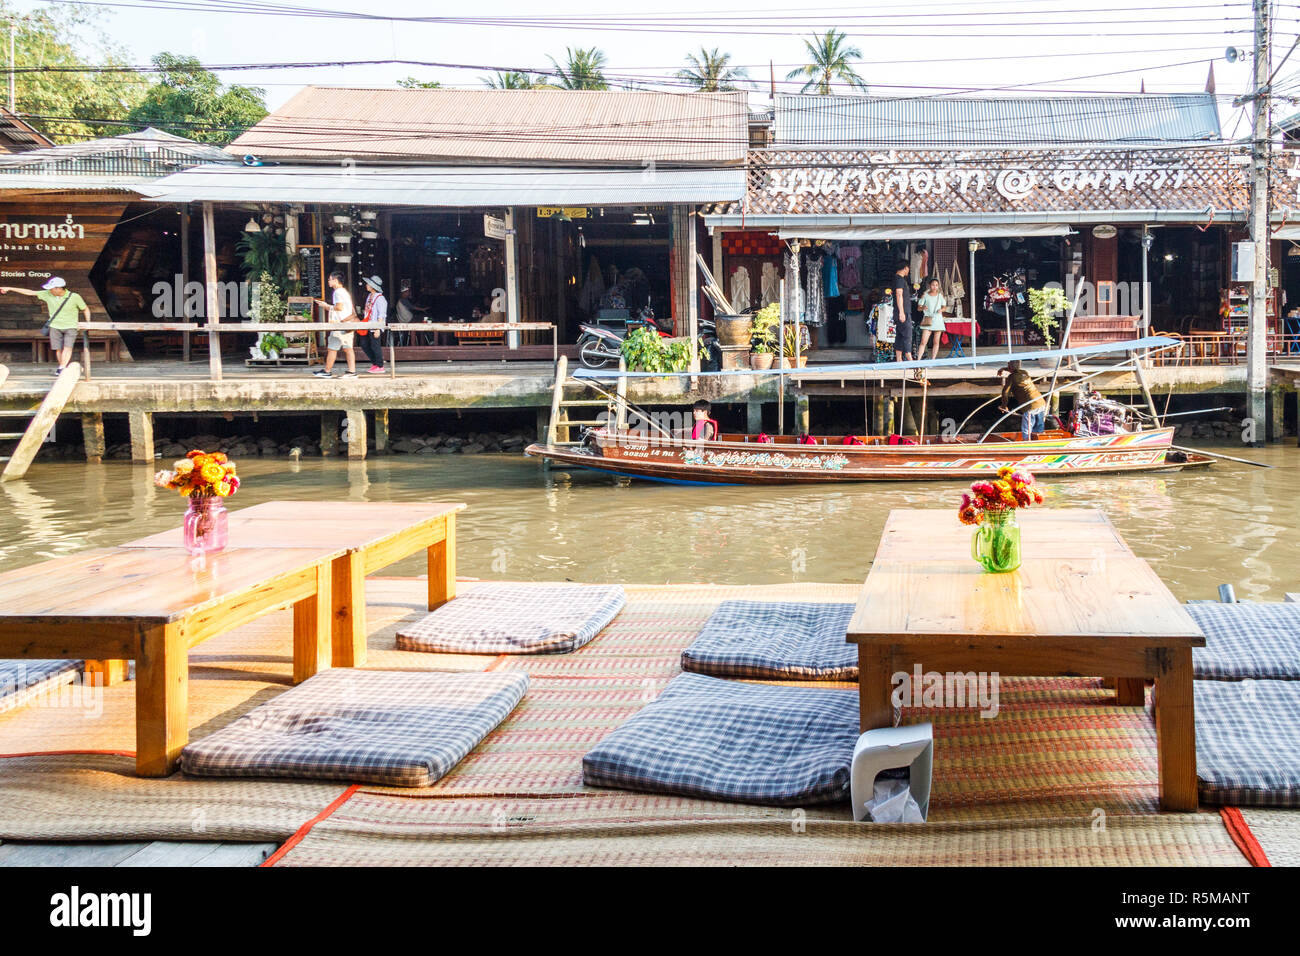 Amphawa, Thailand - 3. März 2017: Traditionelle thailändische Sitzmöbel und  Tische im Restaurant am Fluss. Wochenenden sind besetzt, da es einen  schwimmenden Markt ist Stockfotografie - Alamy